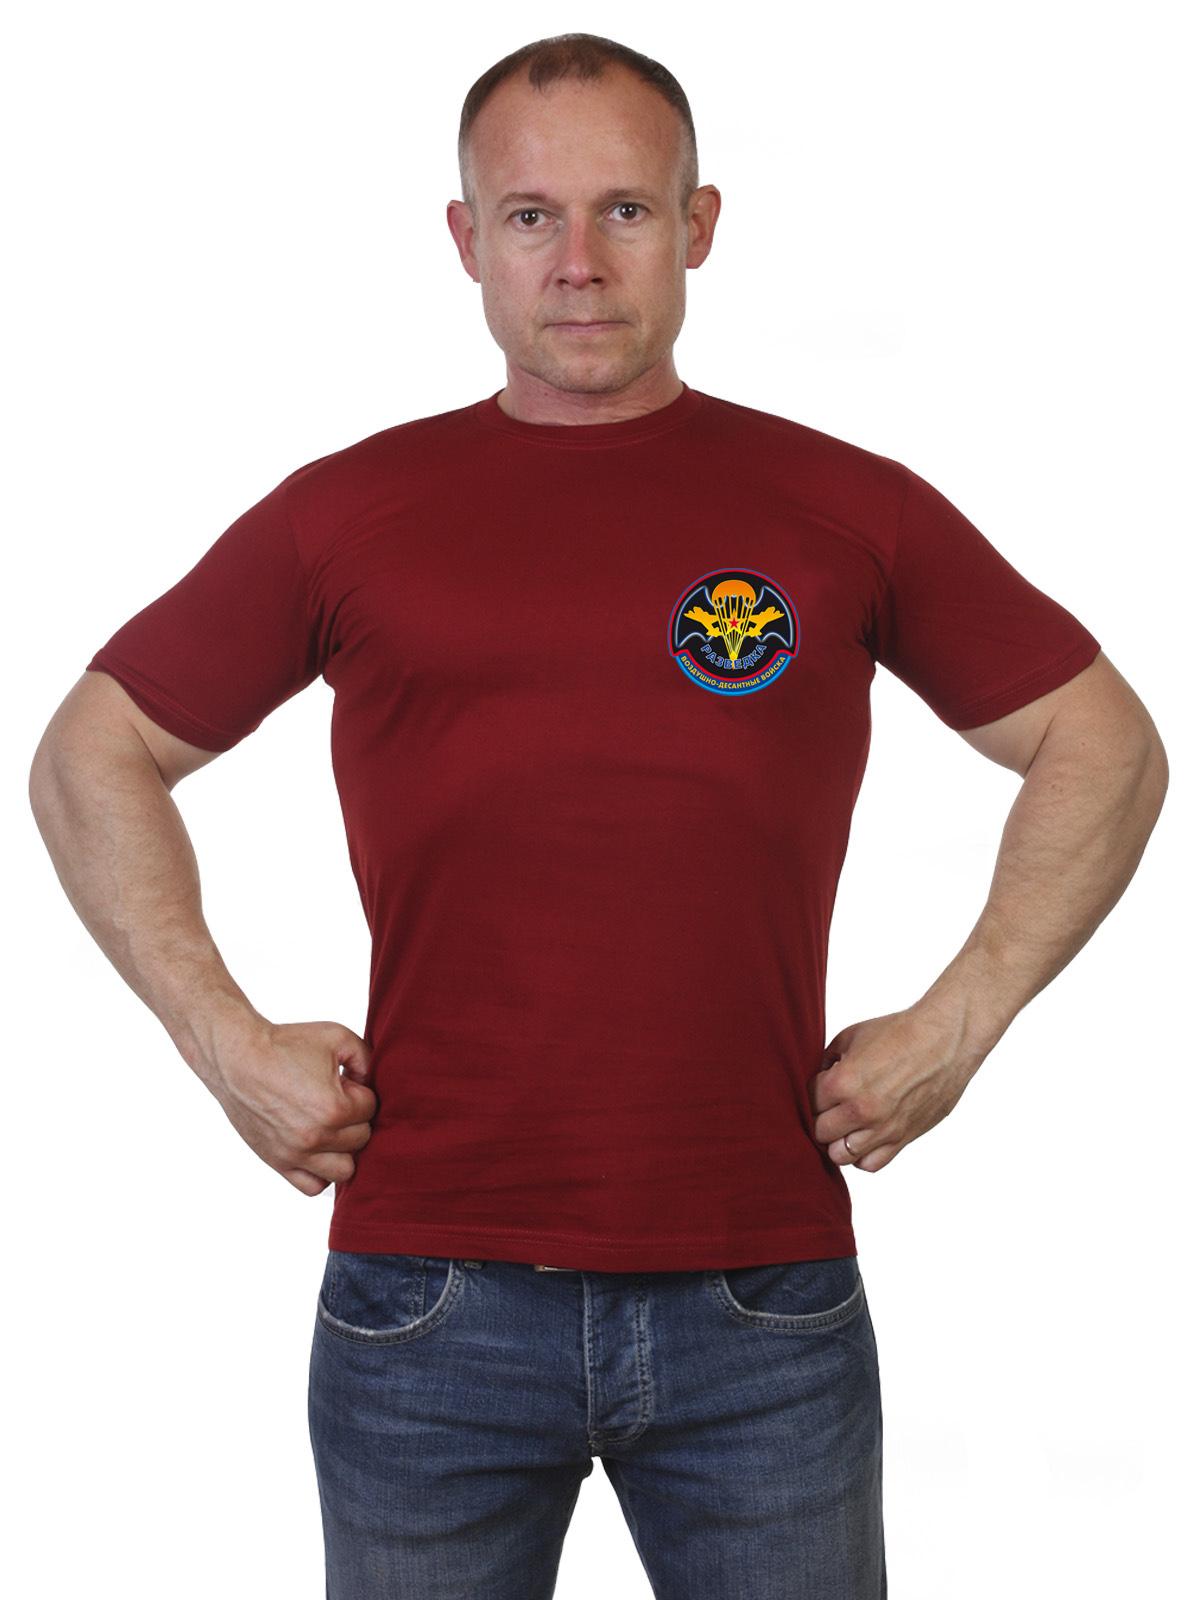 Краповая футболка "Разведка Воздушно-десантных войск" 